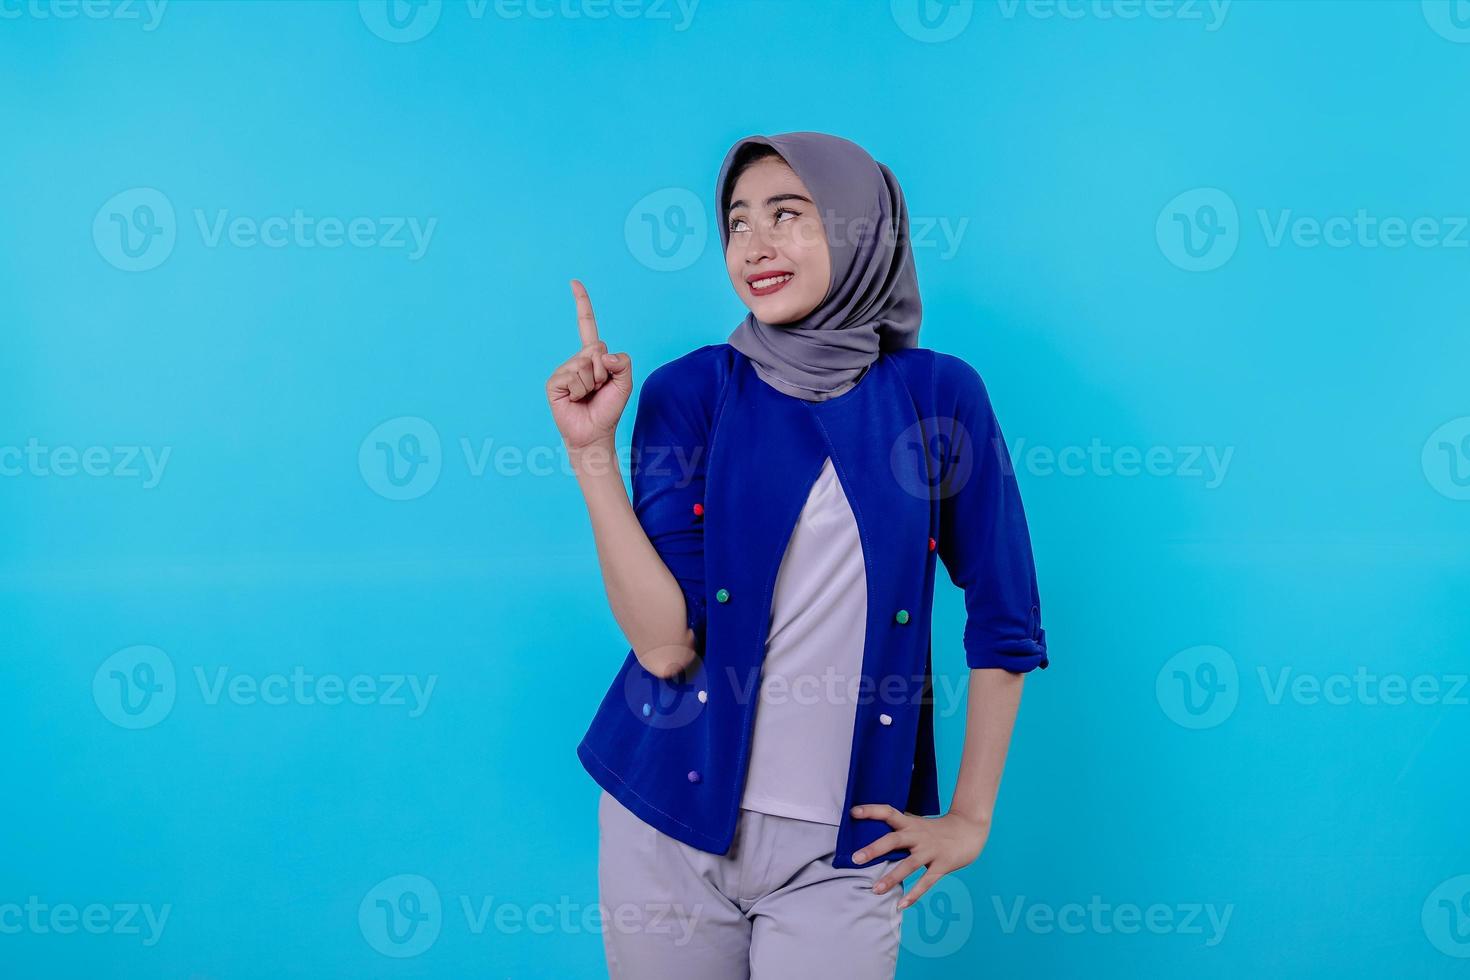 jovem carismática bonita com hijab apontando isolado em fundo azul claro foto